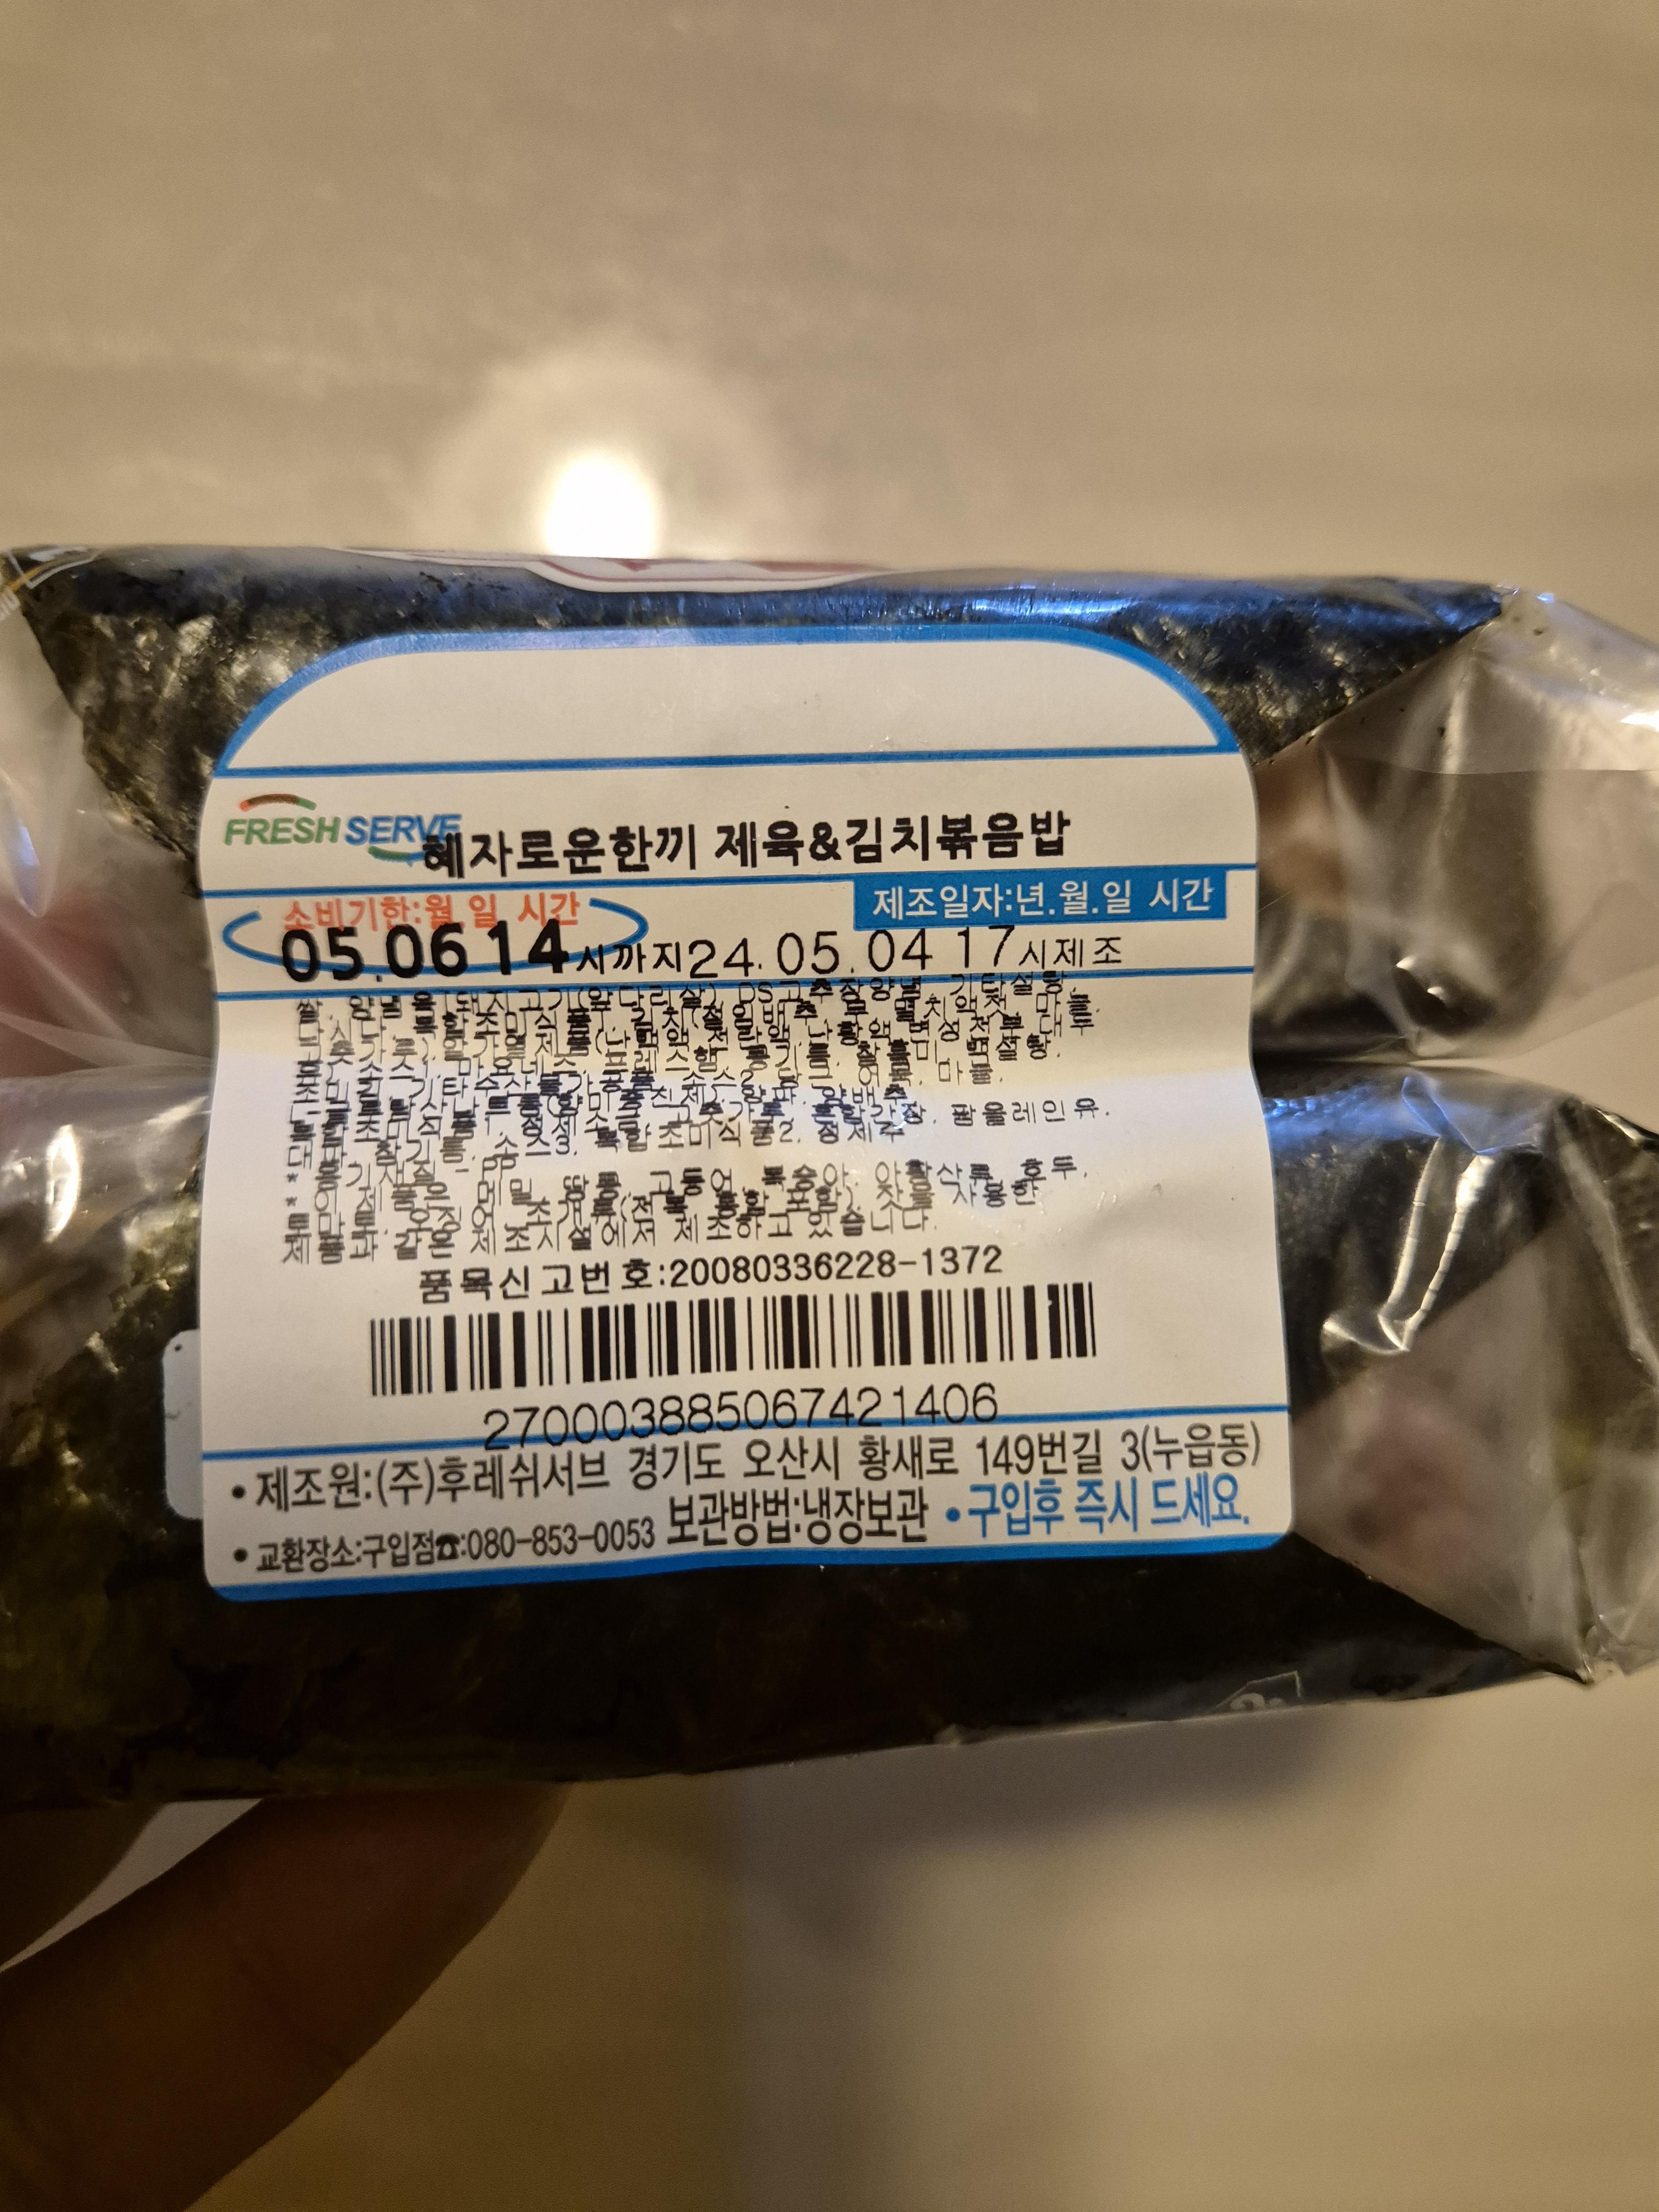 혜자 삼각김밥 세트 가격은 2400원